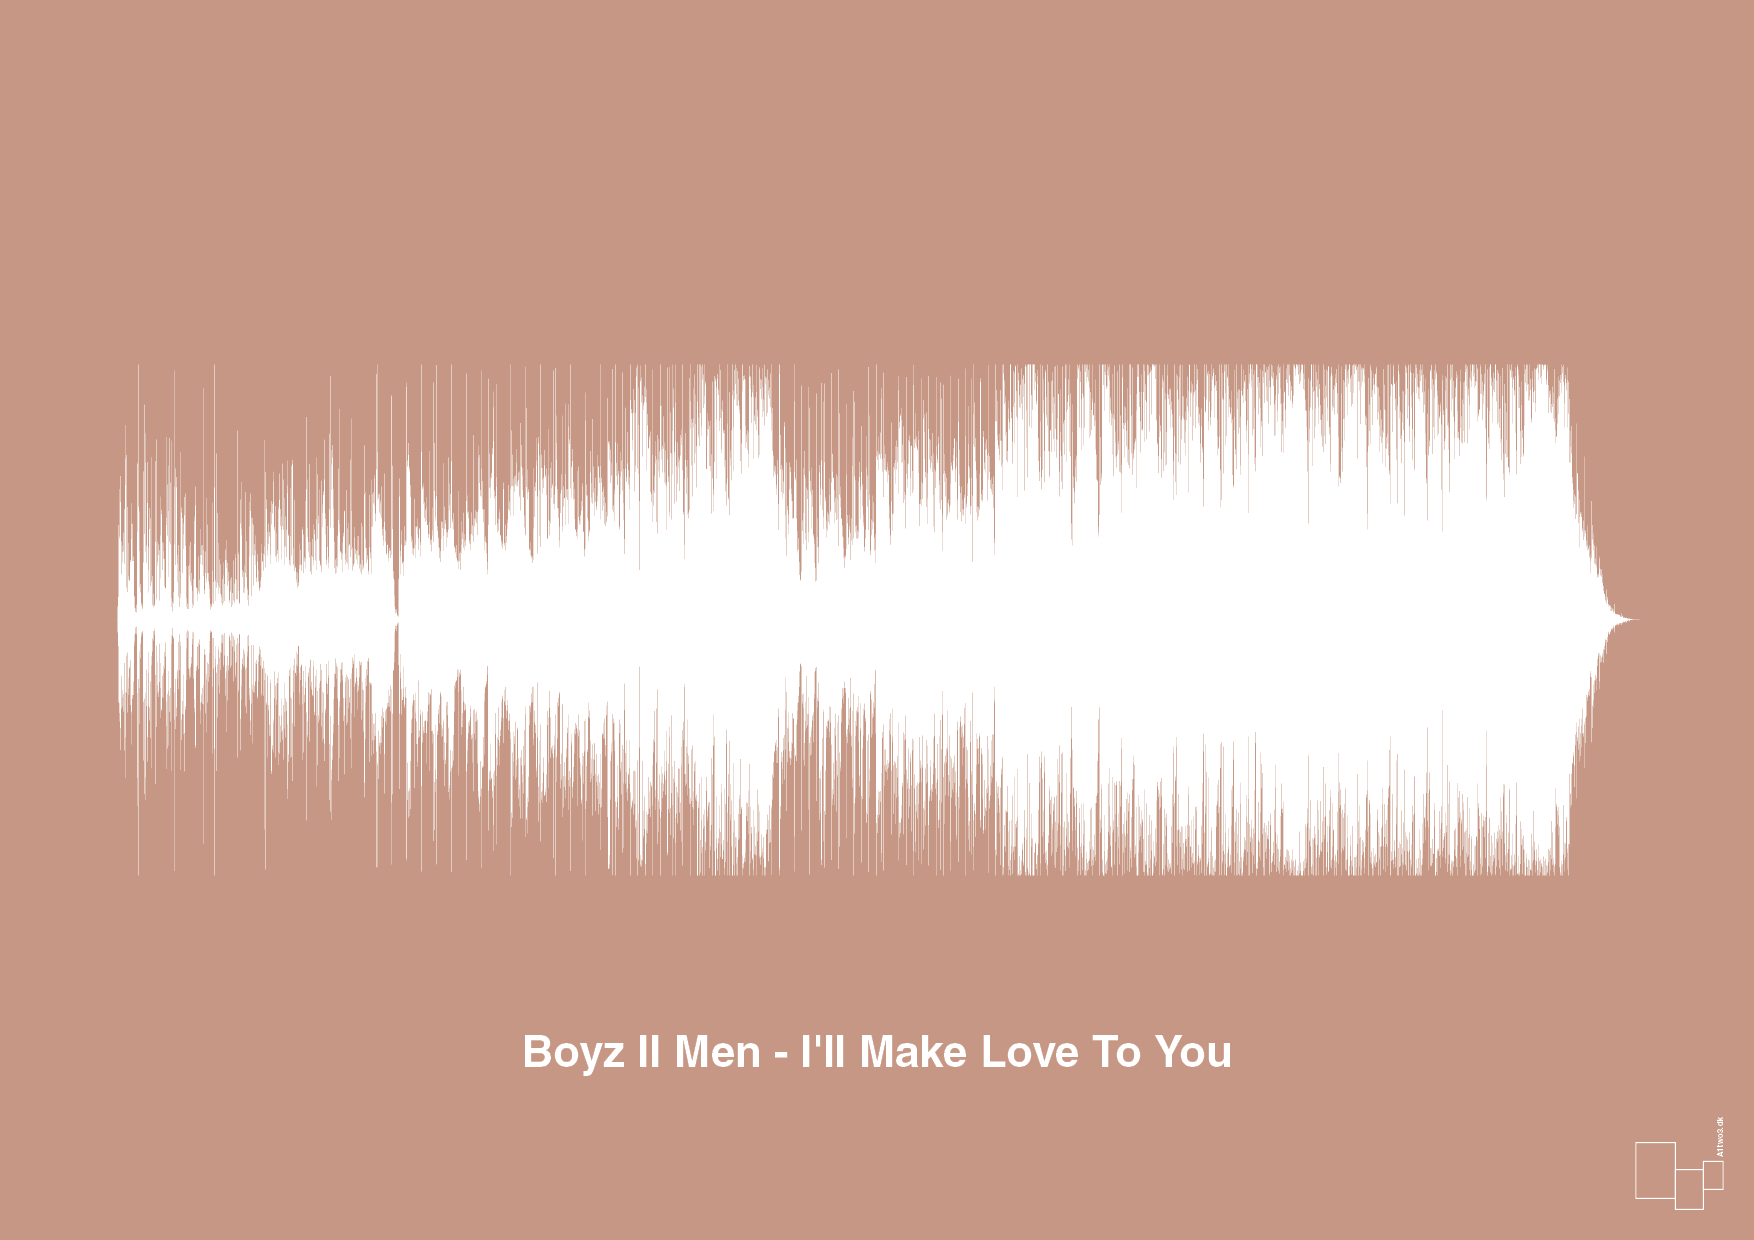 boyz II men - i'll make love to you - Plakat med Musik i Powder